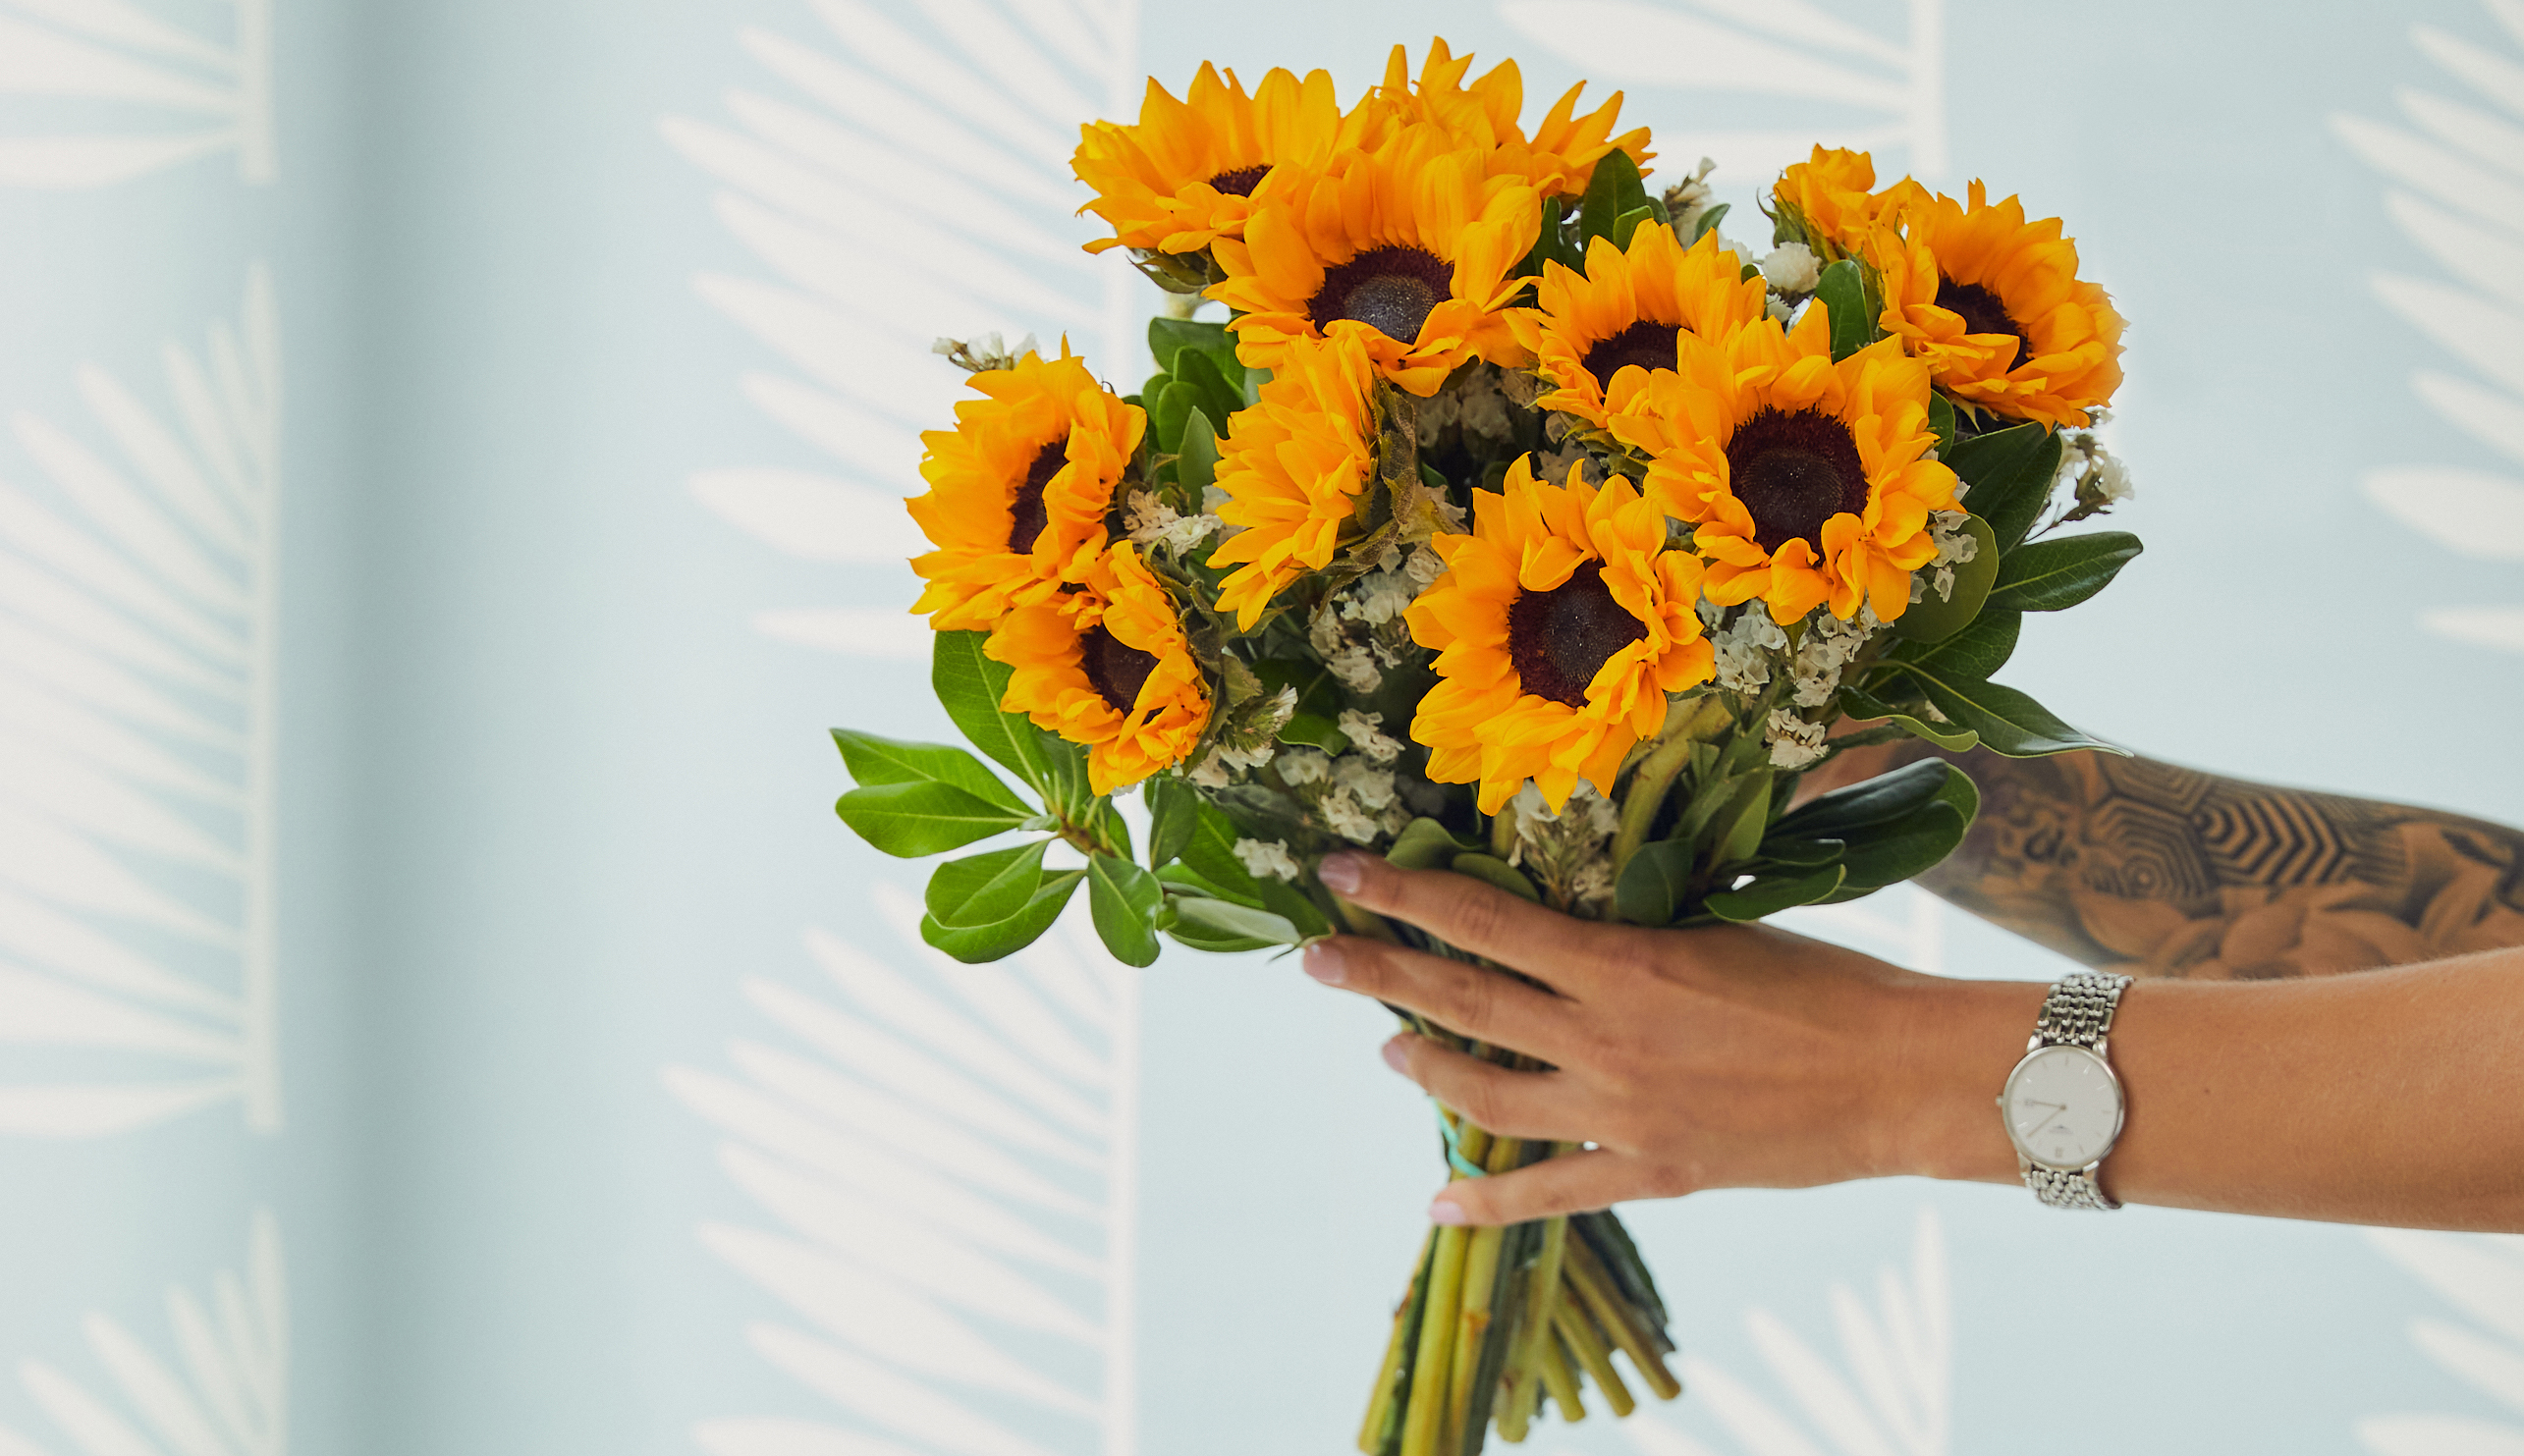 Hands holding sunflower bouquet